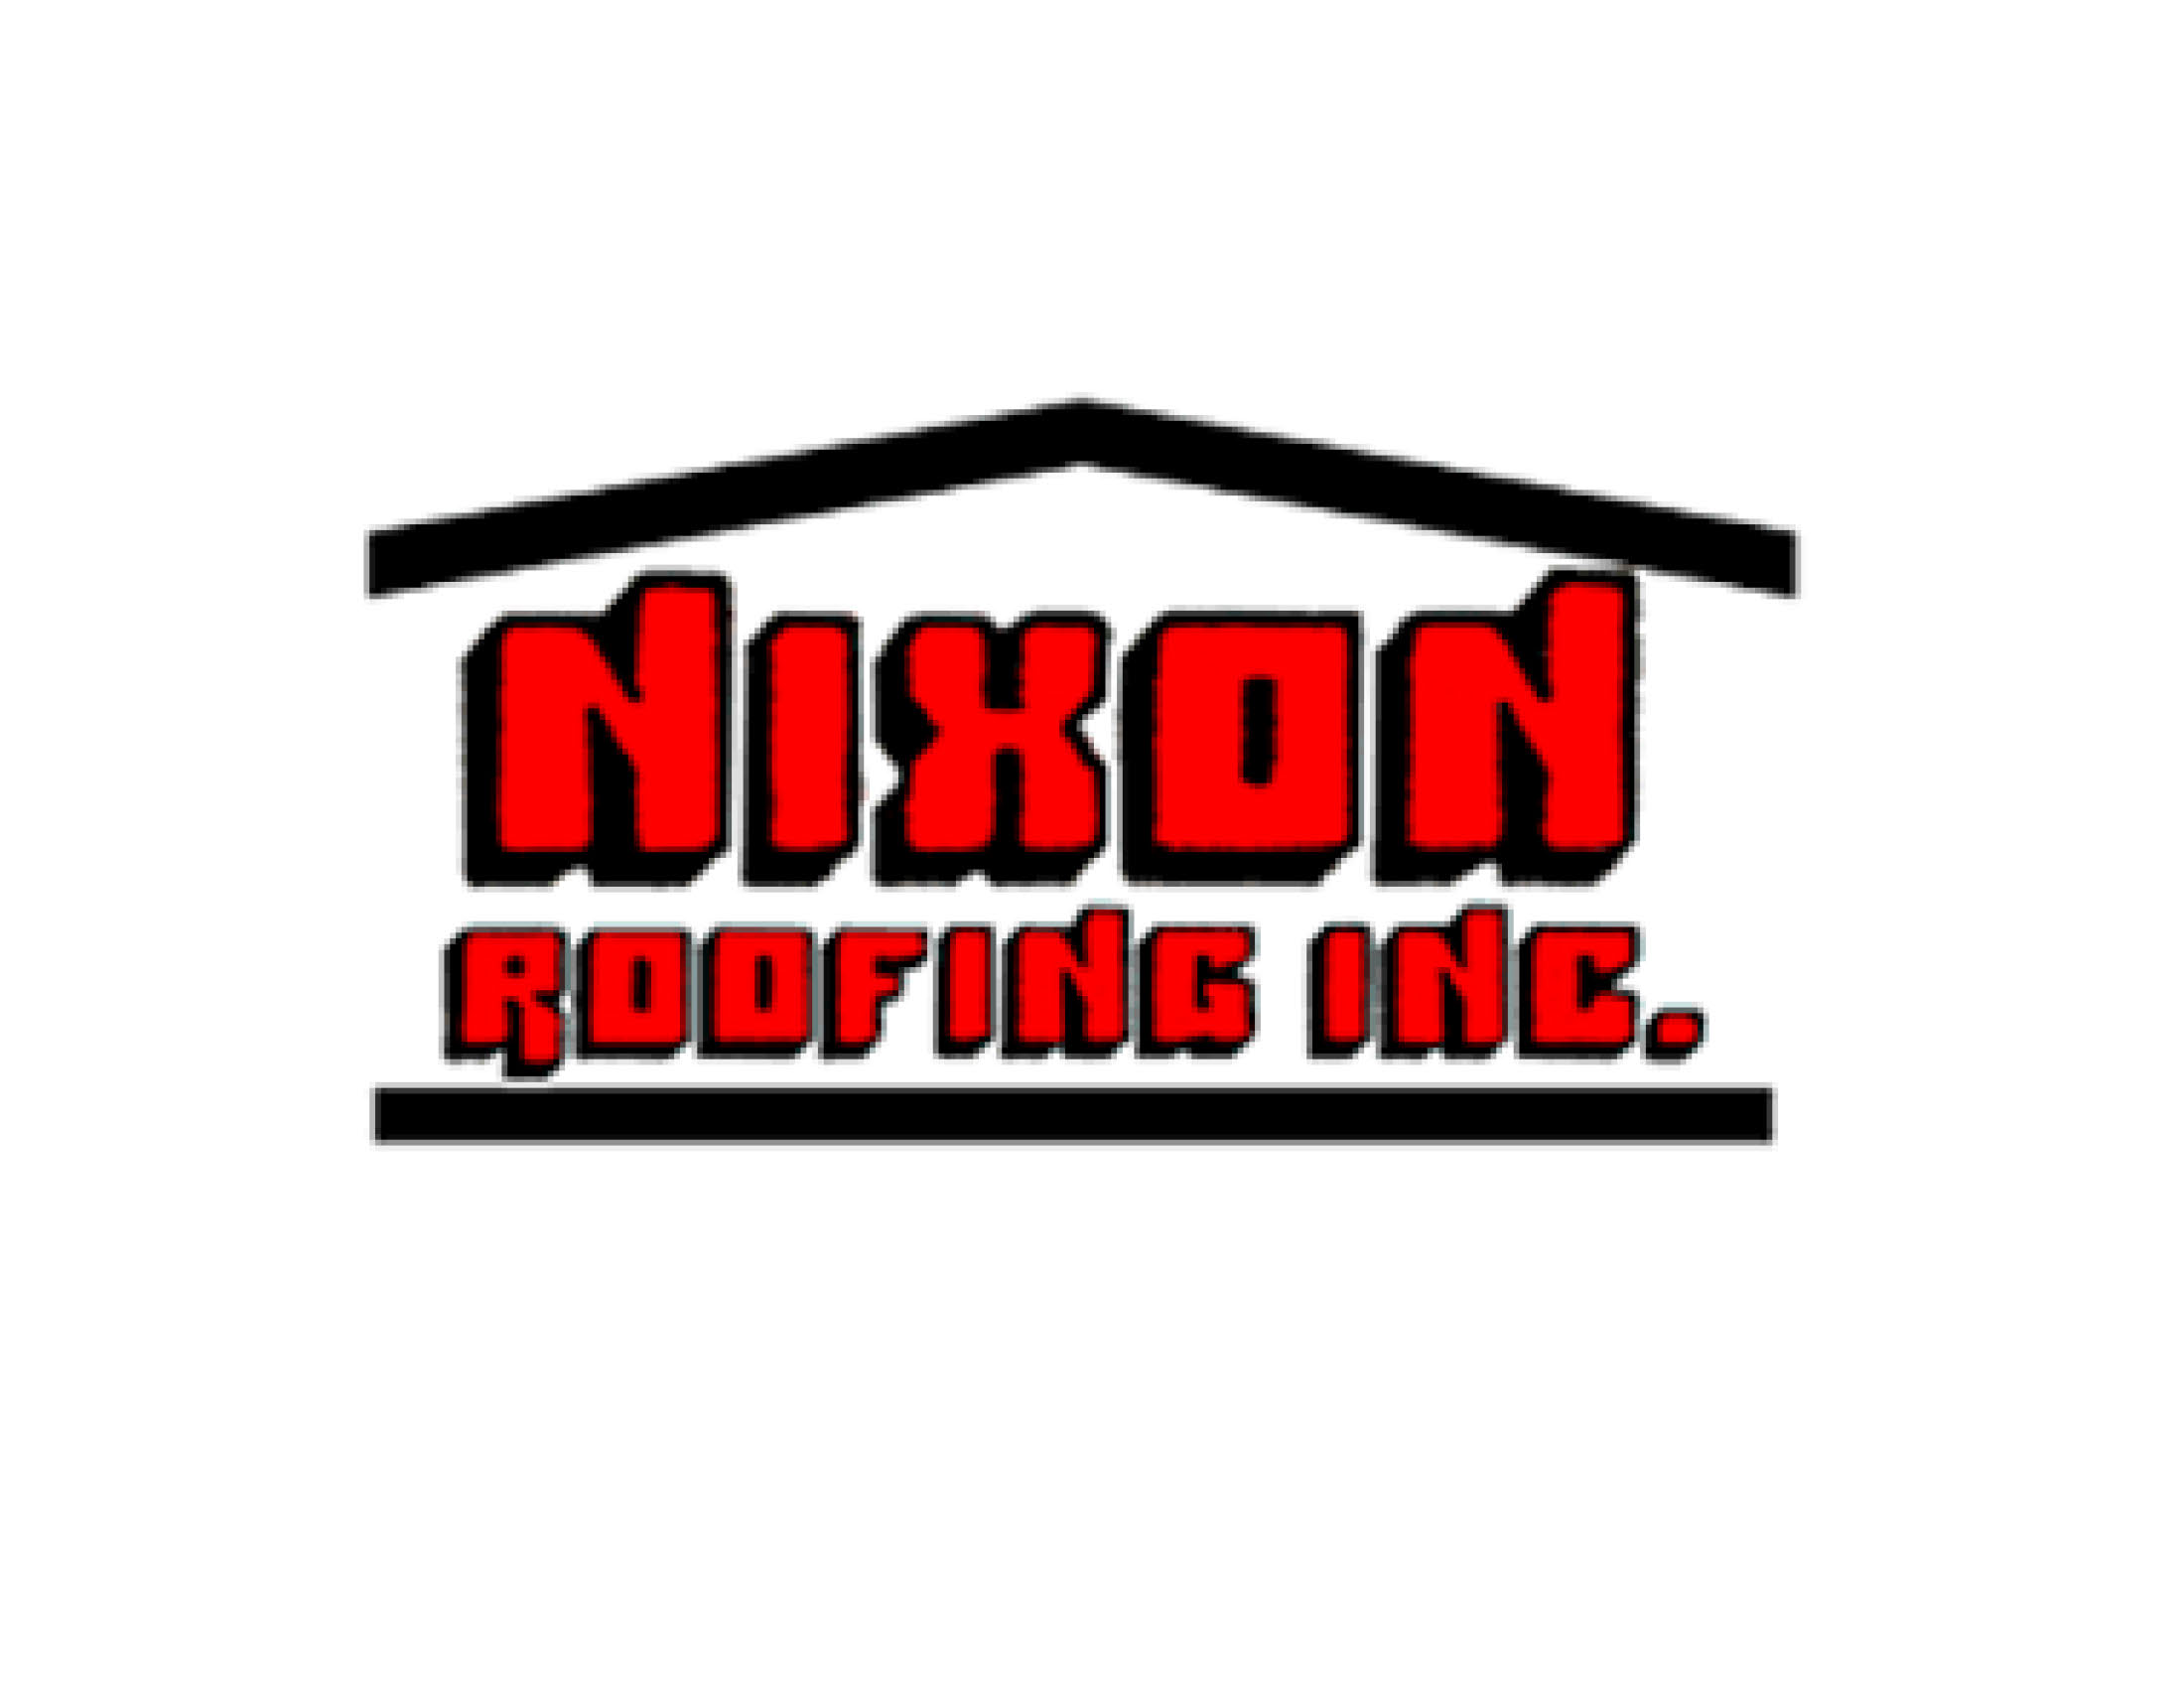 Nixon Roofing Inc.jpg